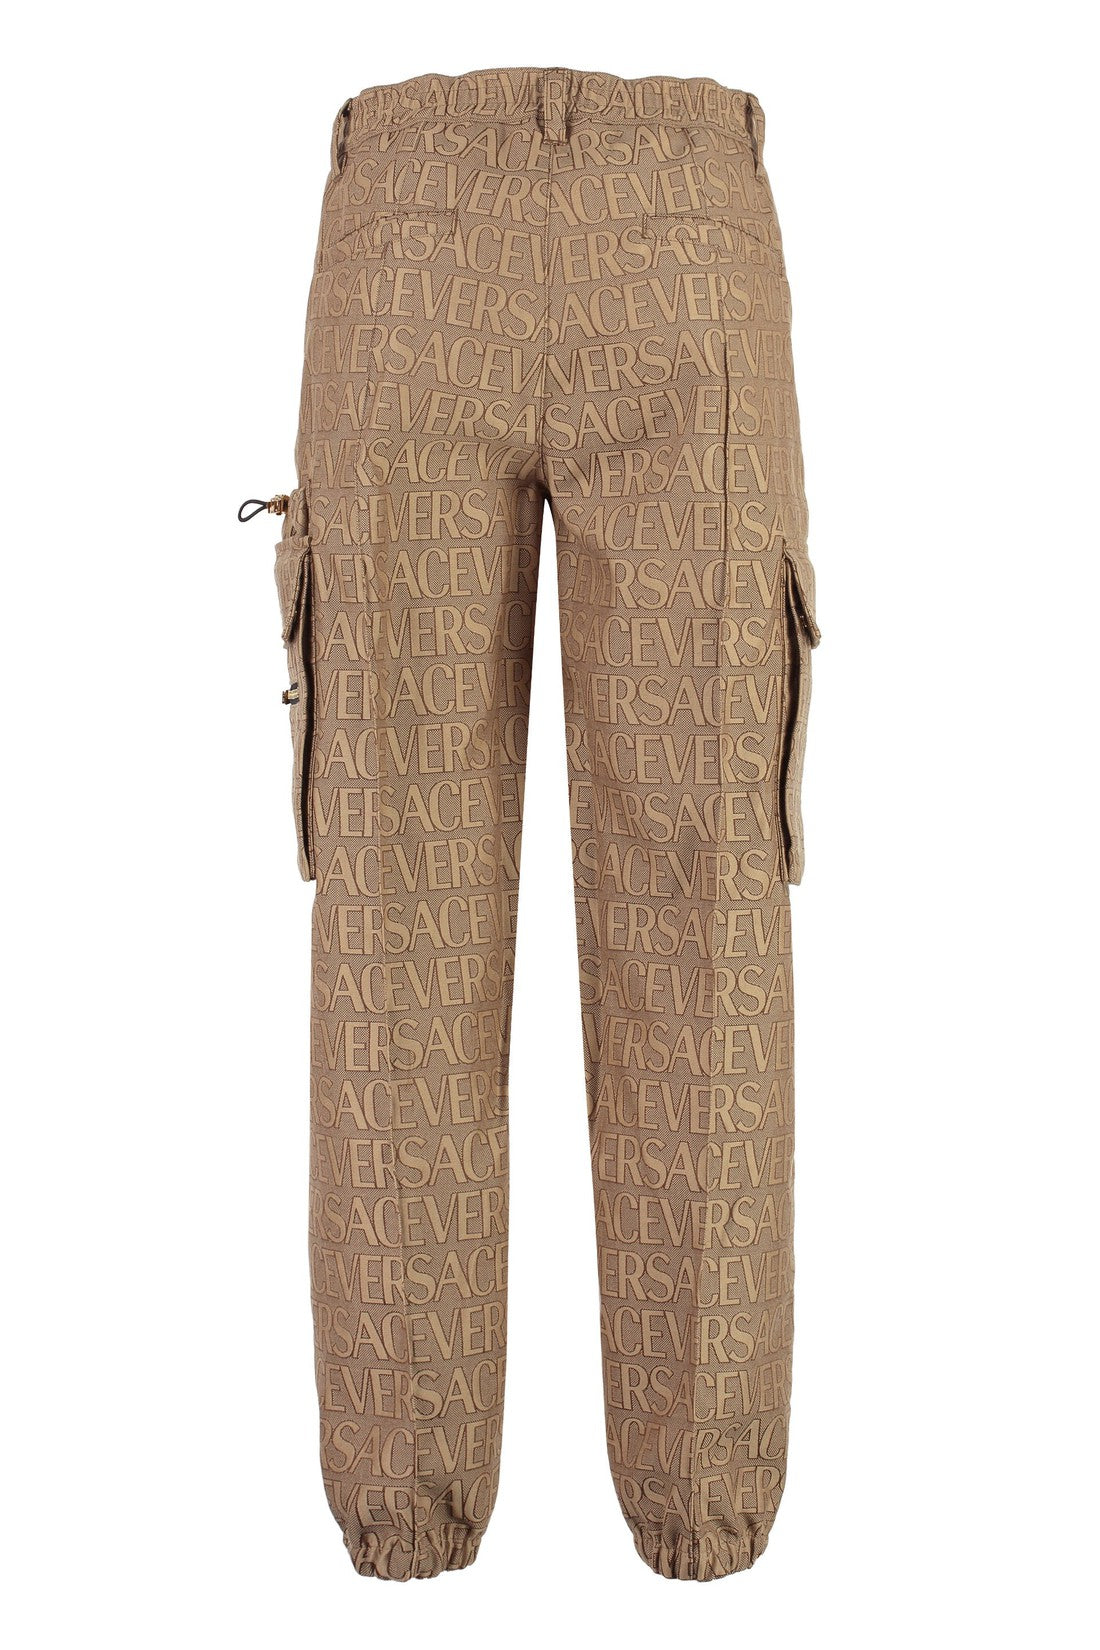 Versace-OUTLET-SALE-Cotton blend cargo-trousers-ARCHIVIST